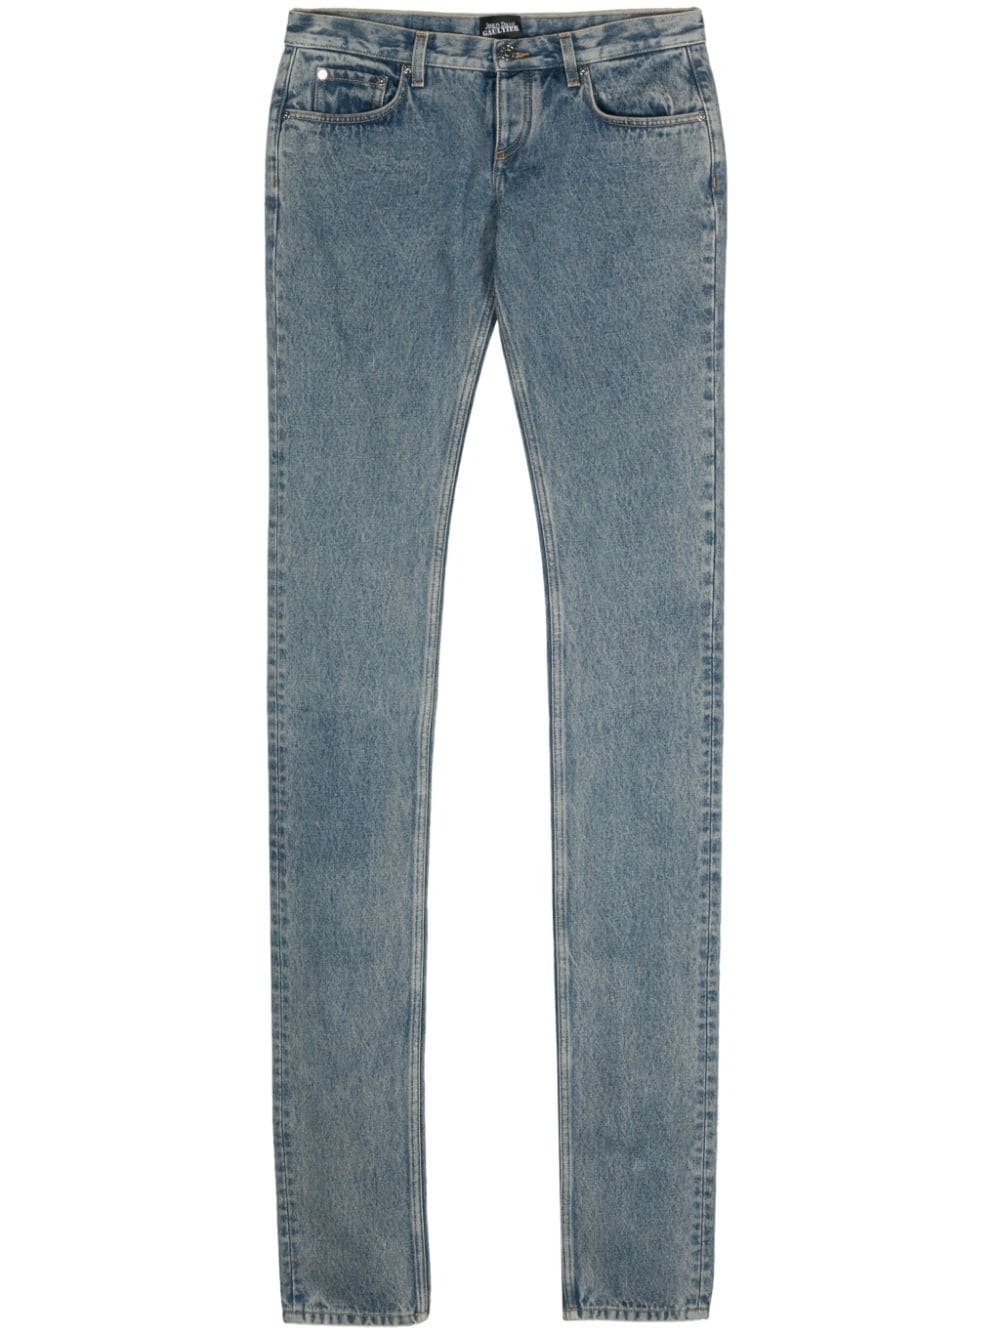 Jean Paul Gaultier Low waist jeans Blauw